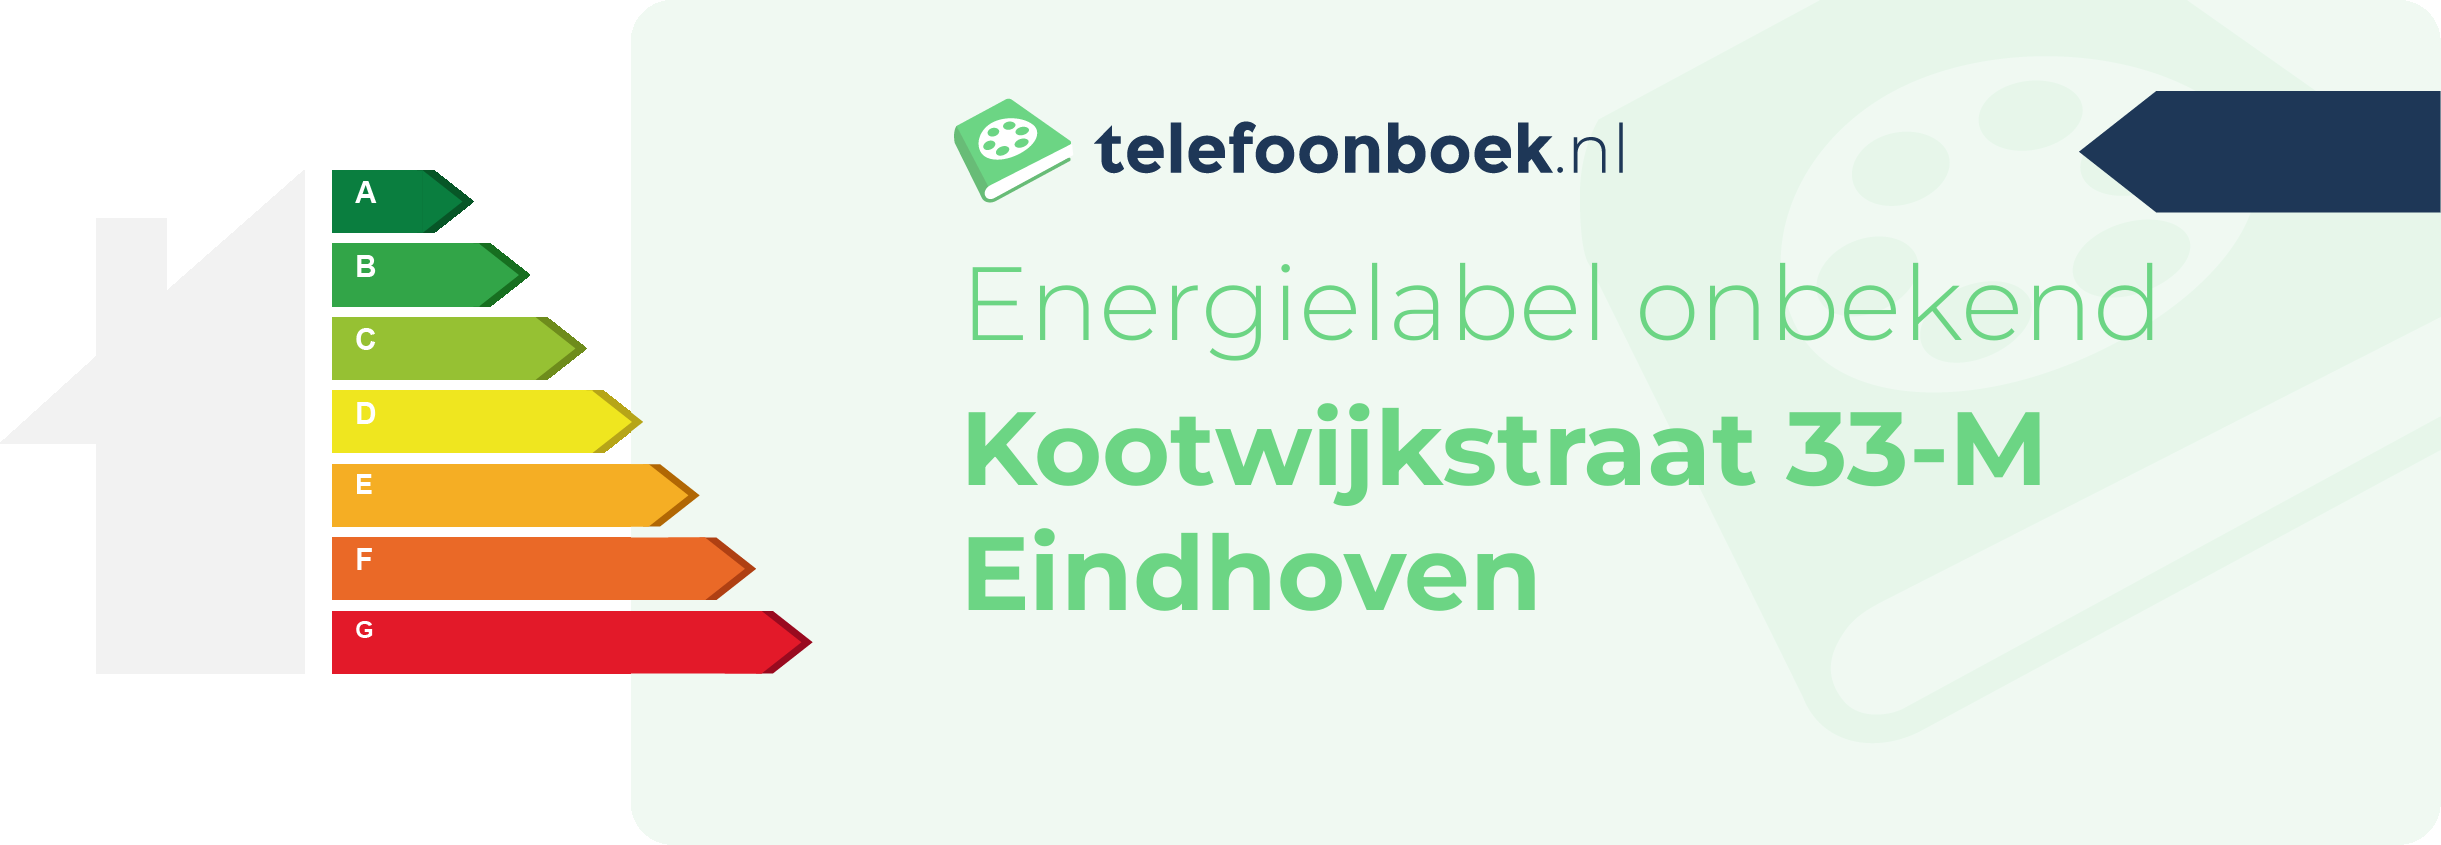 Energielabel Kootwijkstraat 33-M Eindhoven